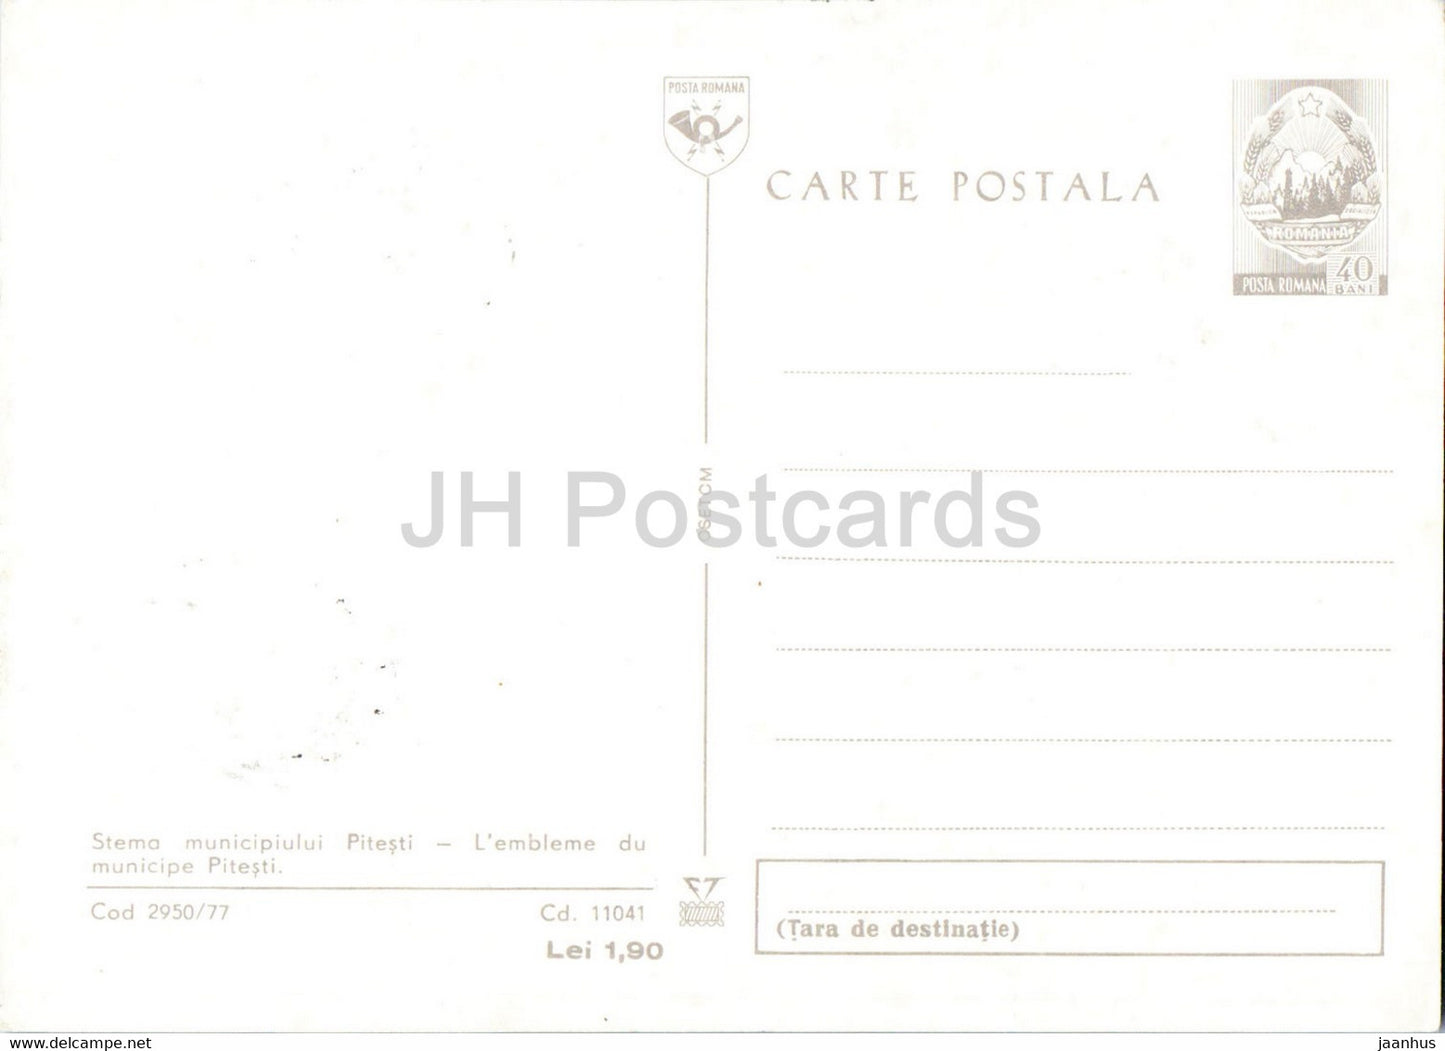 Pitesti - Coat of Arms - postal stationery - Romania - unused